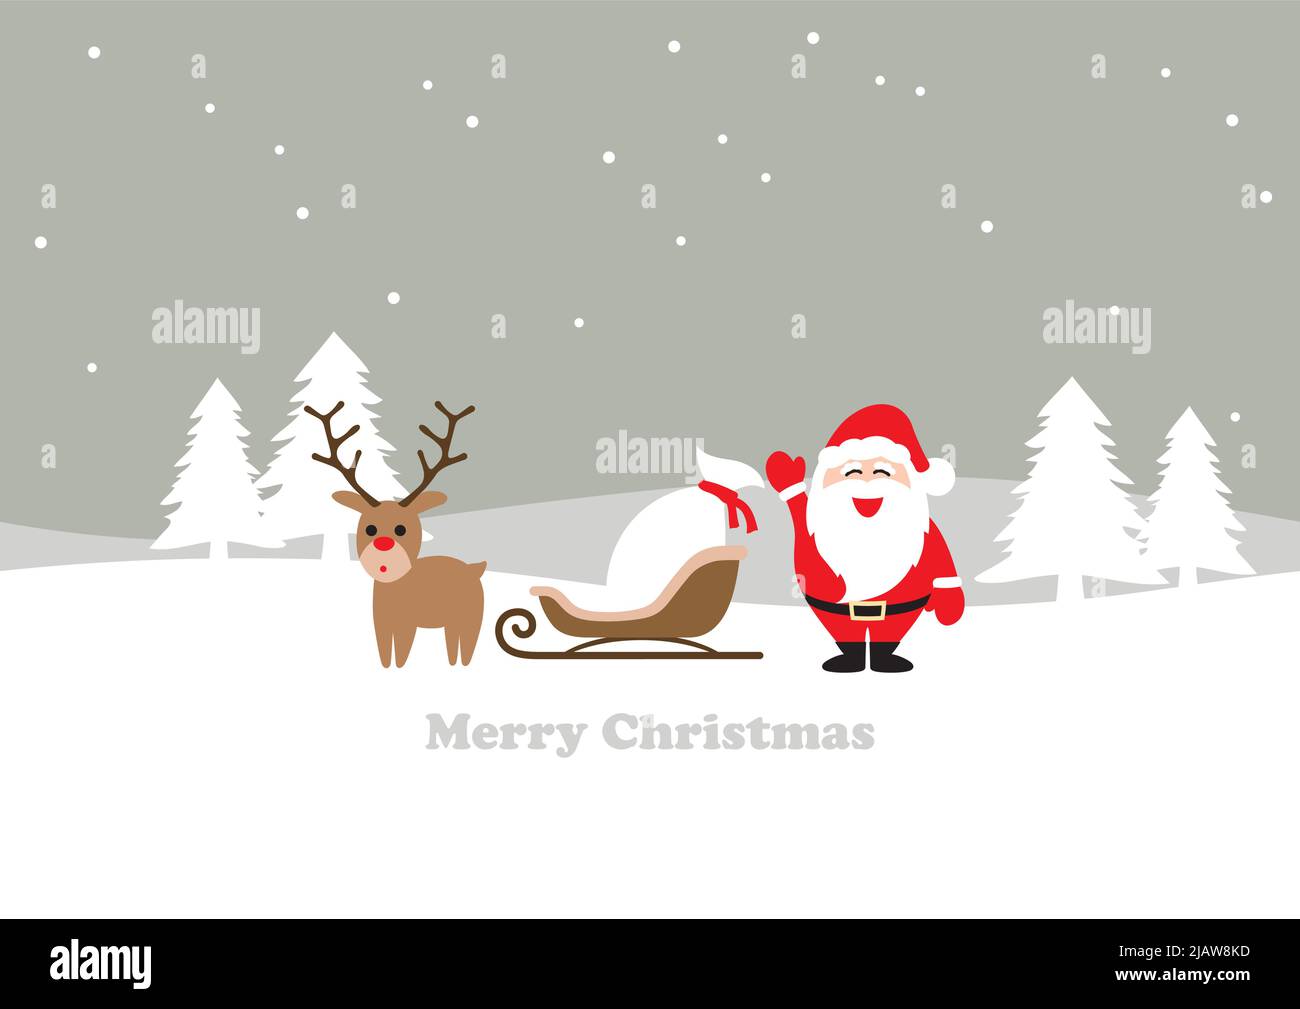 Paesaggio invernale senza giunture con Babbo Natale, una renna e una slitta. Illustrazione vettoriale di stile semplice, semplice e cartoonish. Ripetibile orizzontalmente. Illustrazione Vettoriale